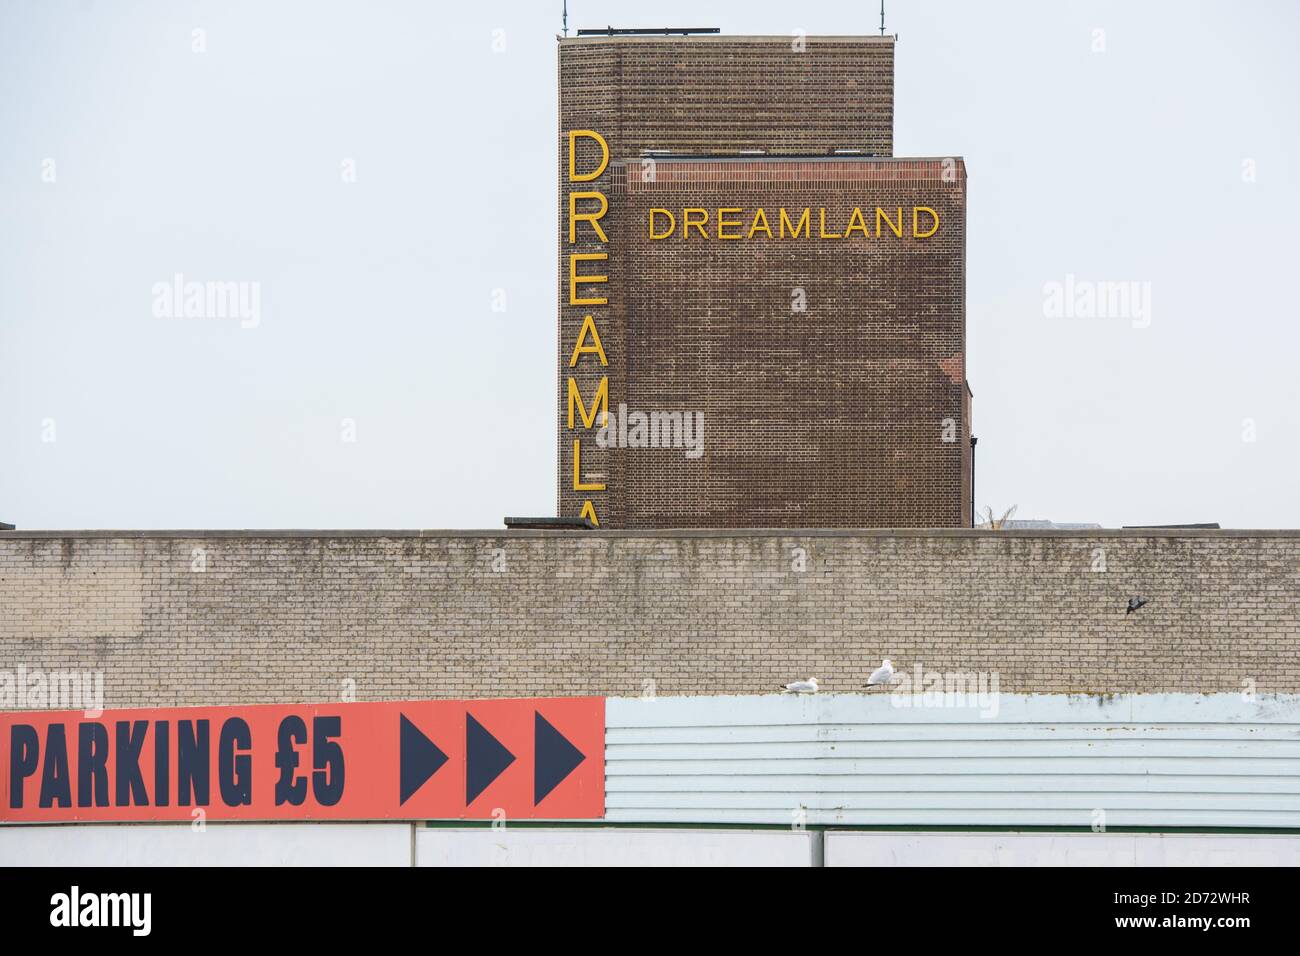 Vista generale di Dreamland a Margate, Kent, che rilanciò per la seconda volta nel 2016. Data immagine: Venerdì 20 luglio 2018. Il credito fotografico dovrebbe essere: Matt Crossick/ EMPICS Entertainment. Foto Stock